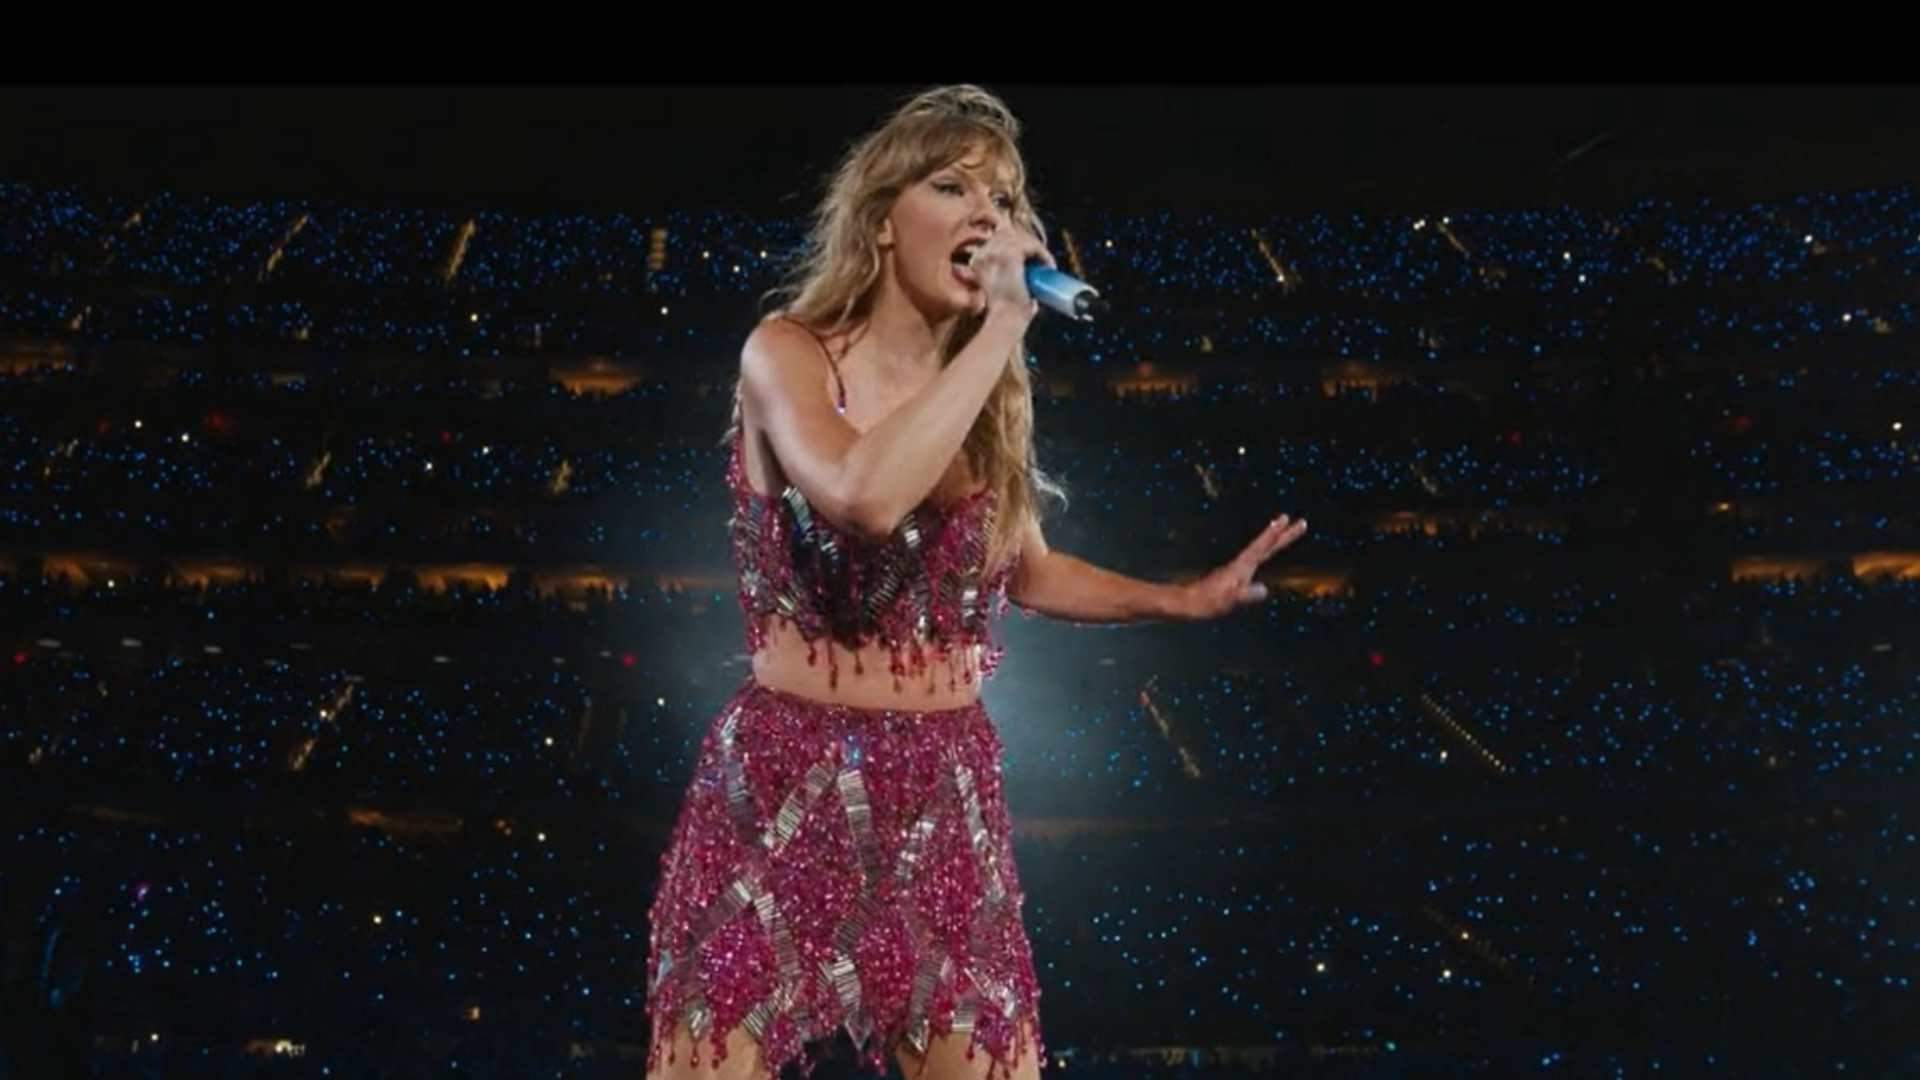 Este es el set list del concierto de Taylor Swift en Madrid con sus mejores canciones